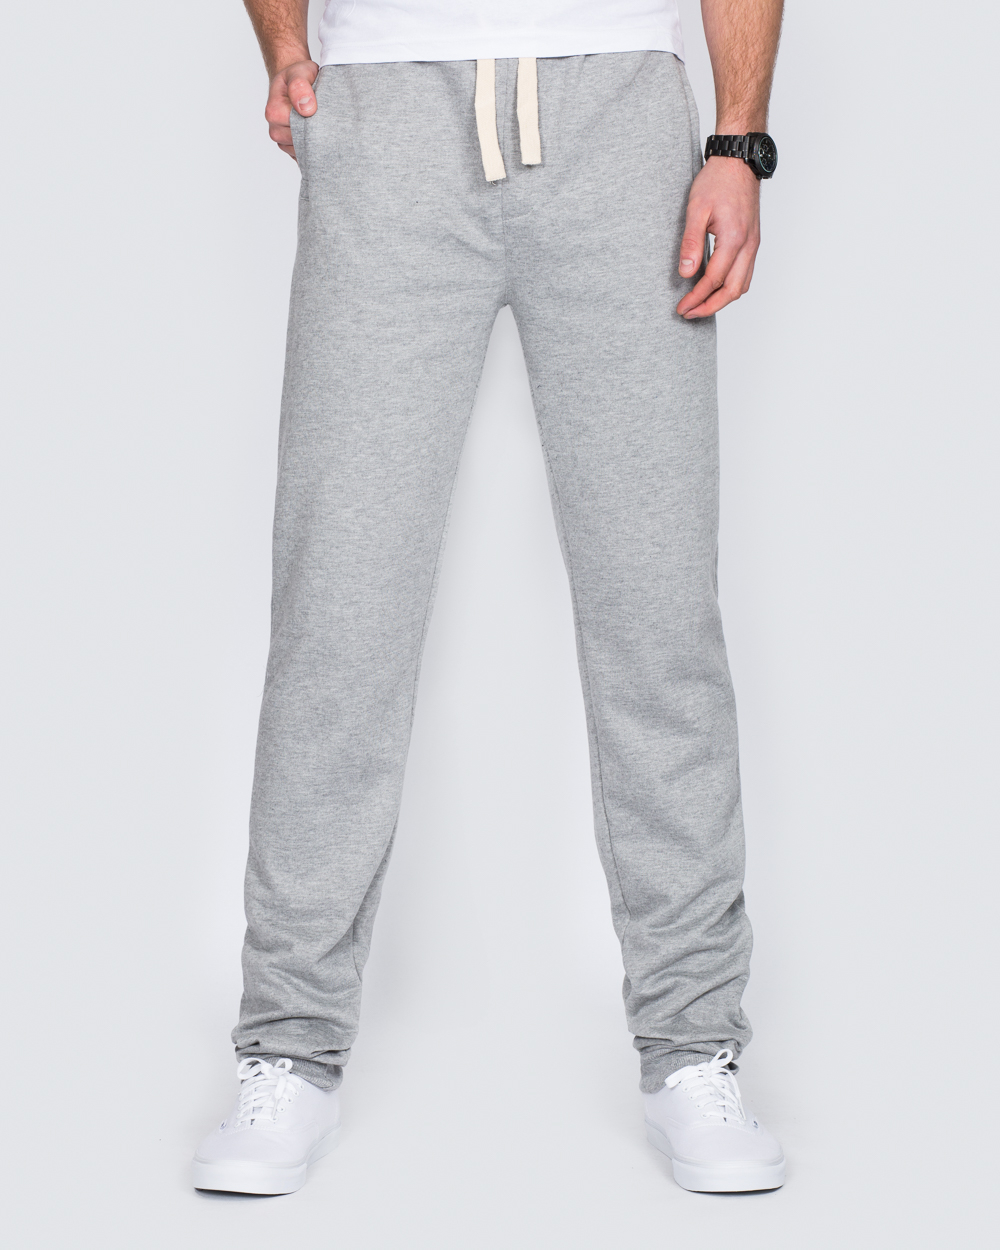 2t Tall Sweat Pants (heather grey) | 2tall.com